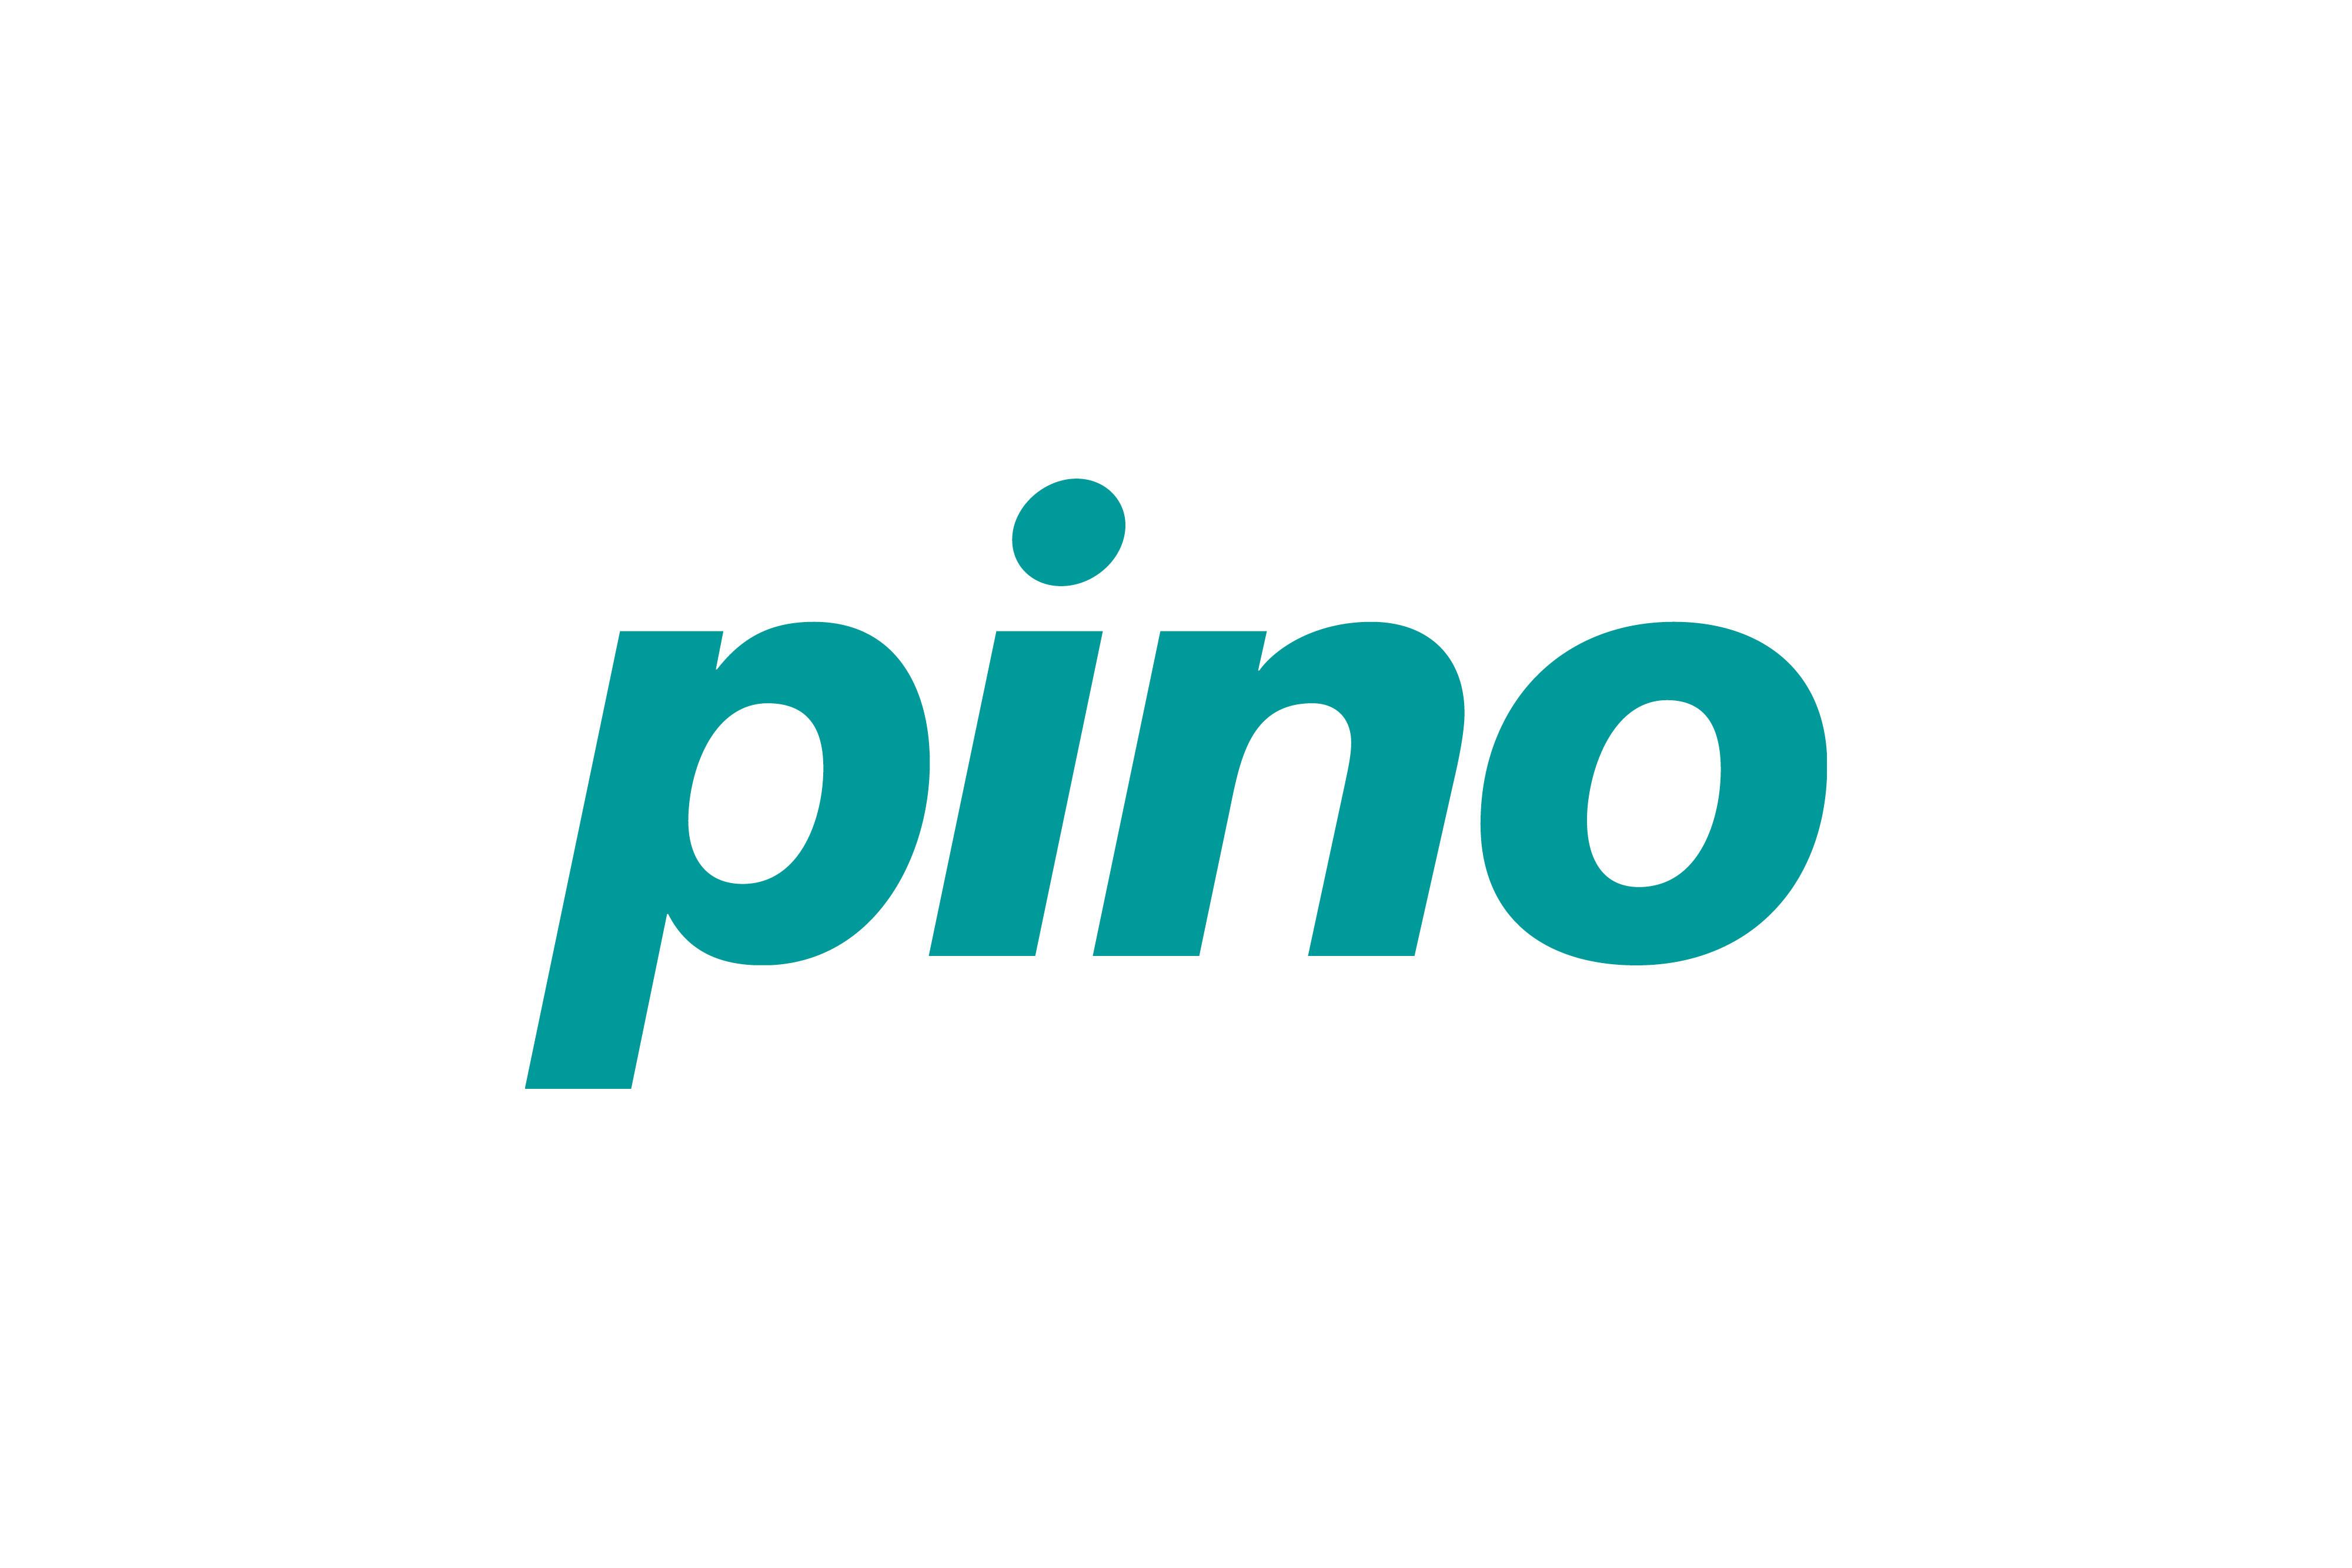 Logo Pino